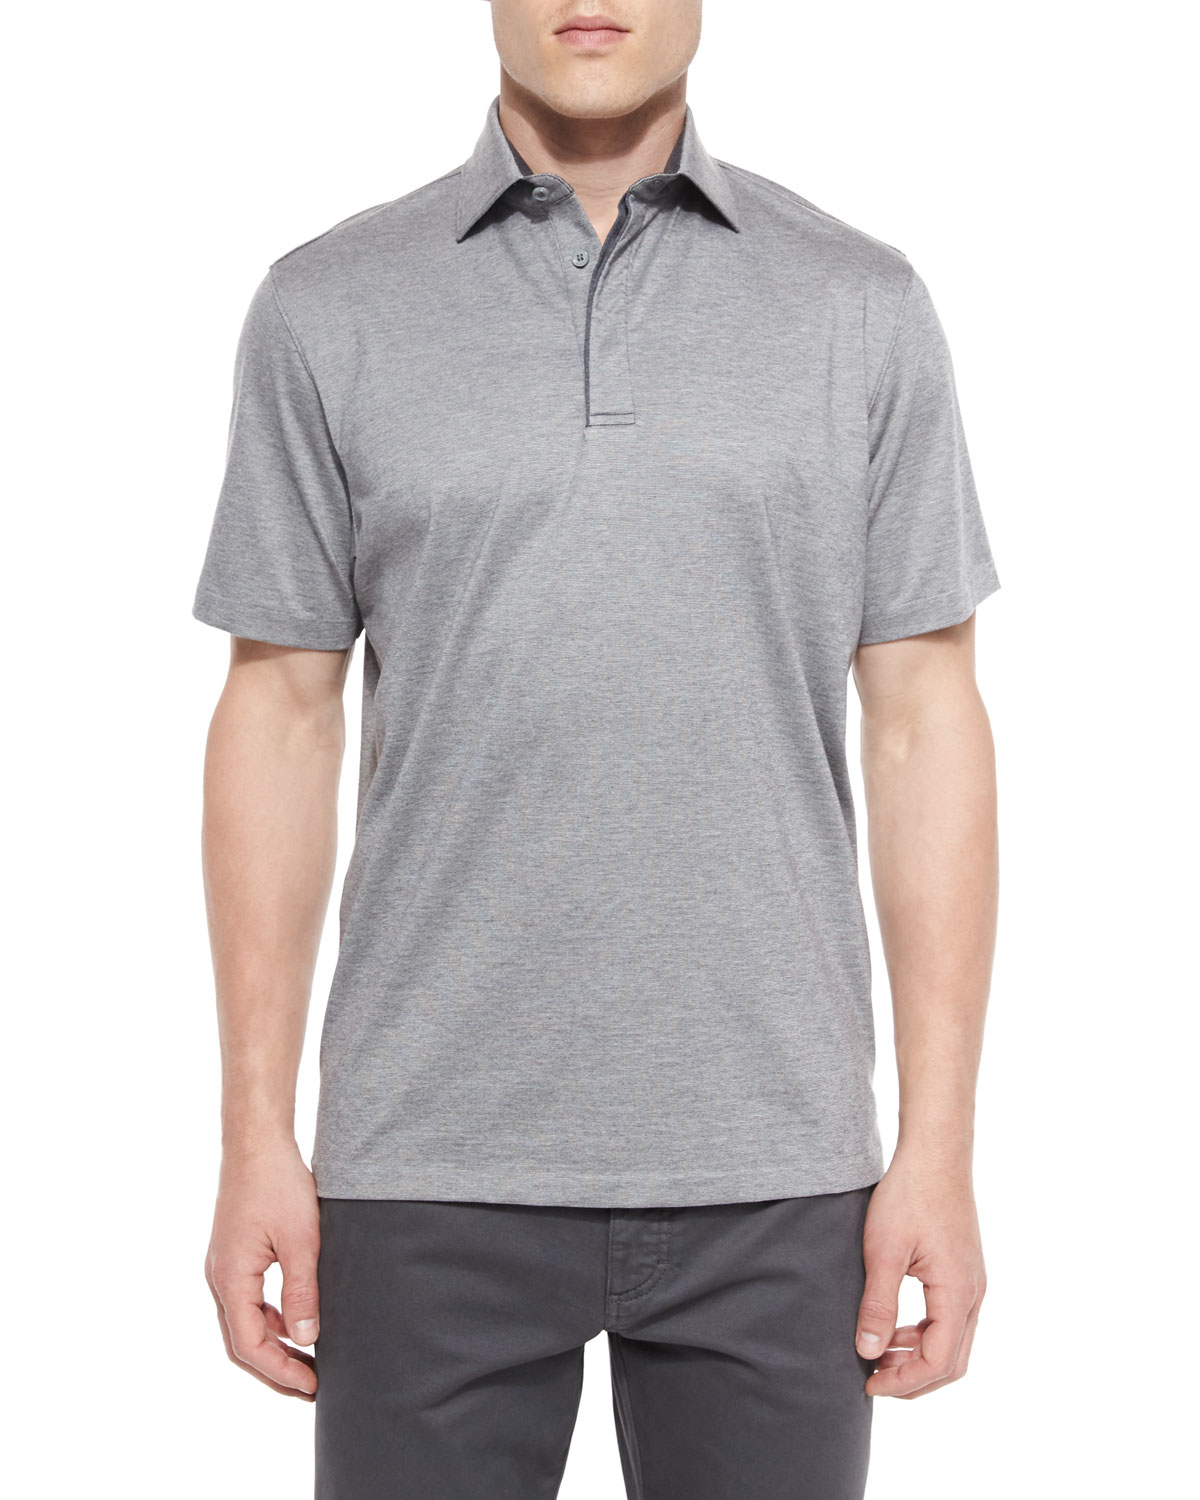 Ermenegildo Zegna 1X1 Knit Polo Shirt in Gray for Men - Lyst